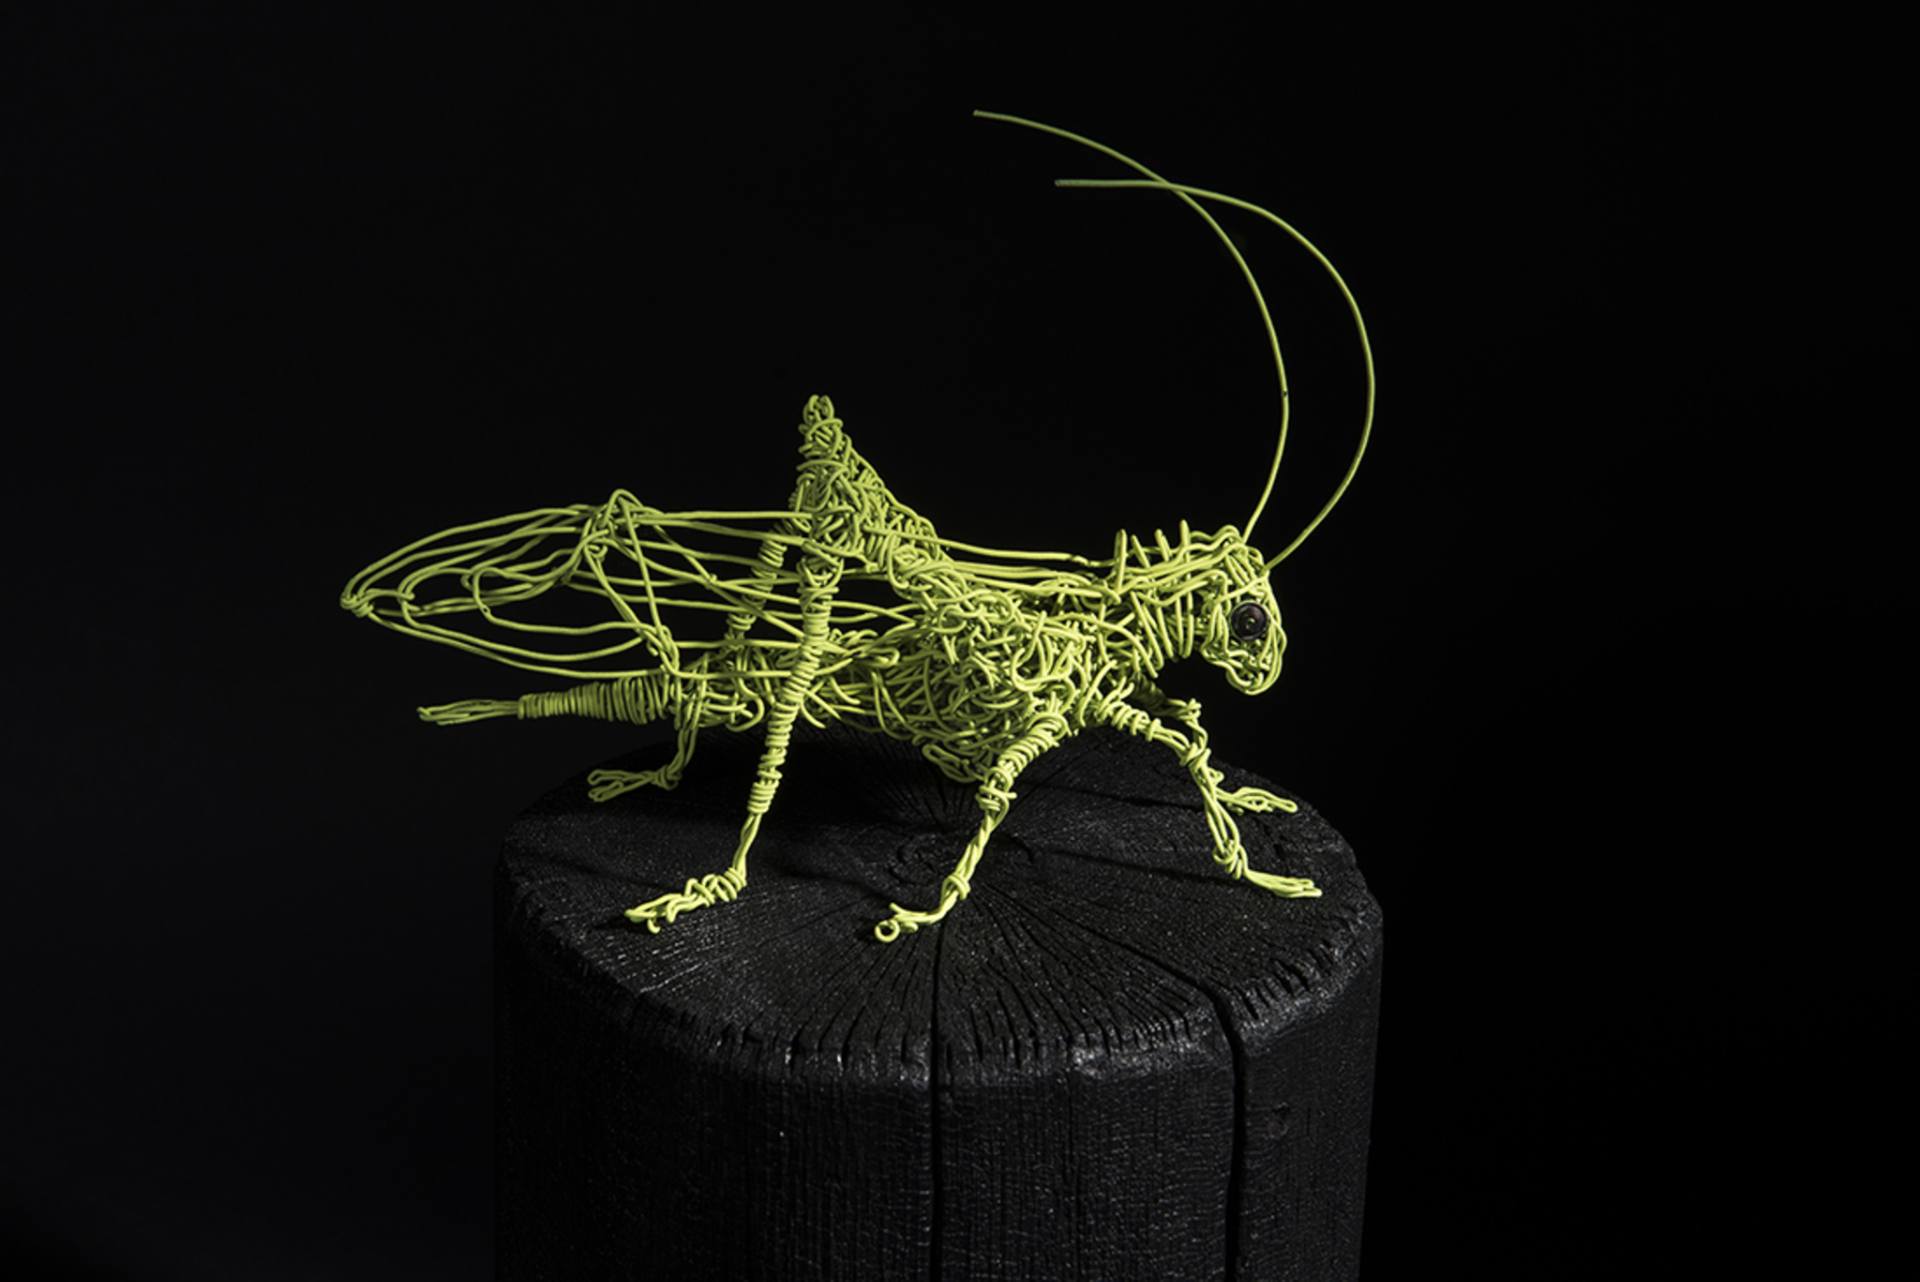 Grasshopper on wire photo